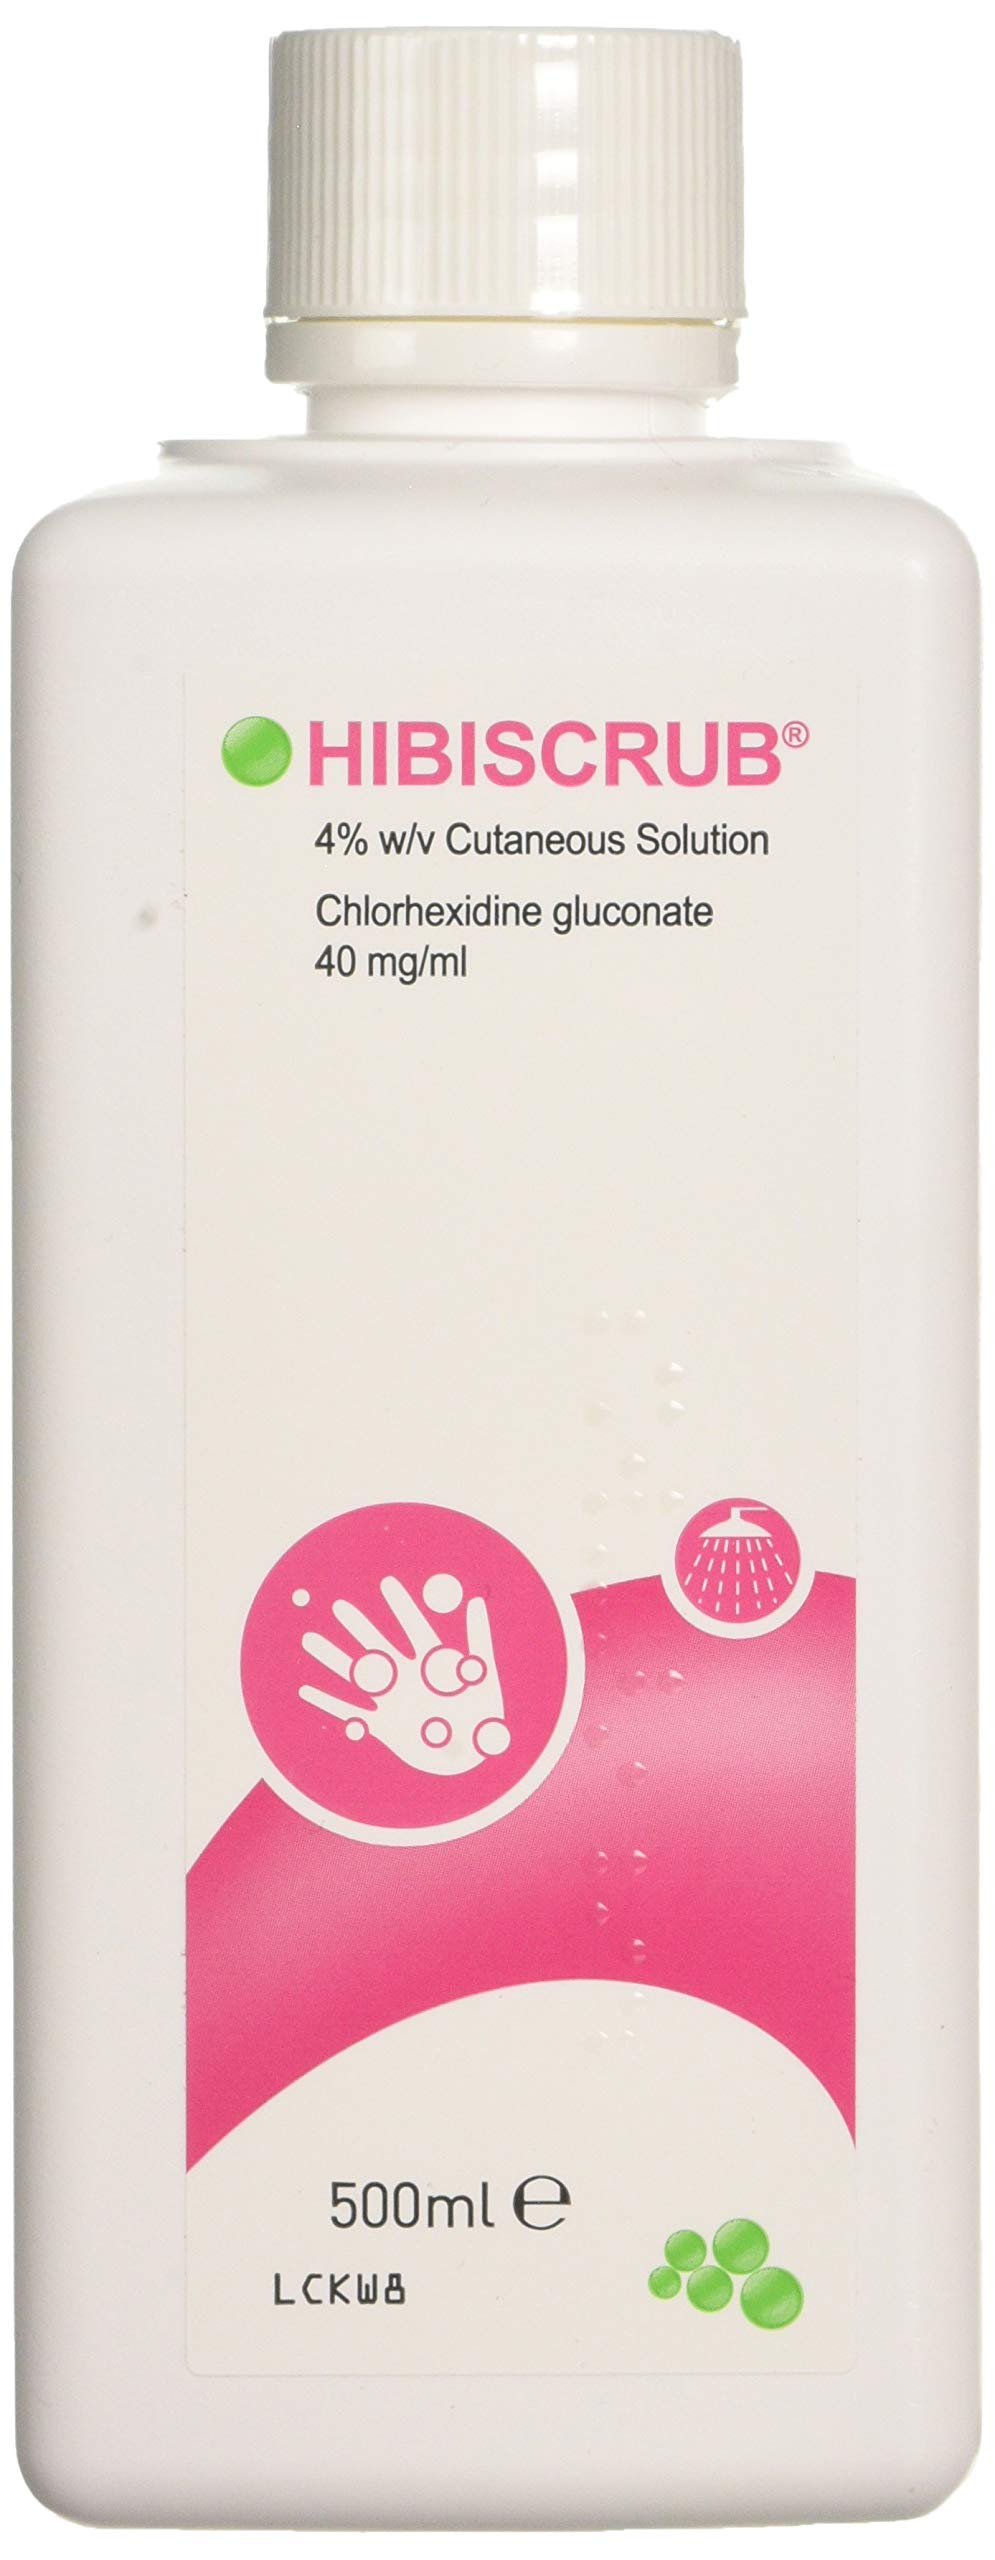 Hibiscrub Skin Wash - Antimicrobal Skin Cleanser 500ml